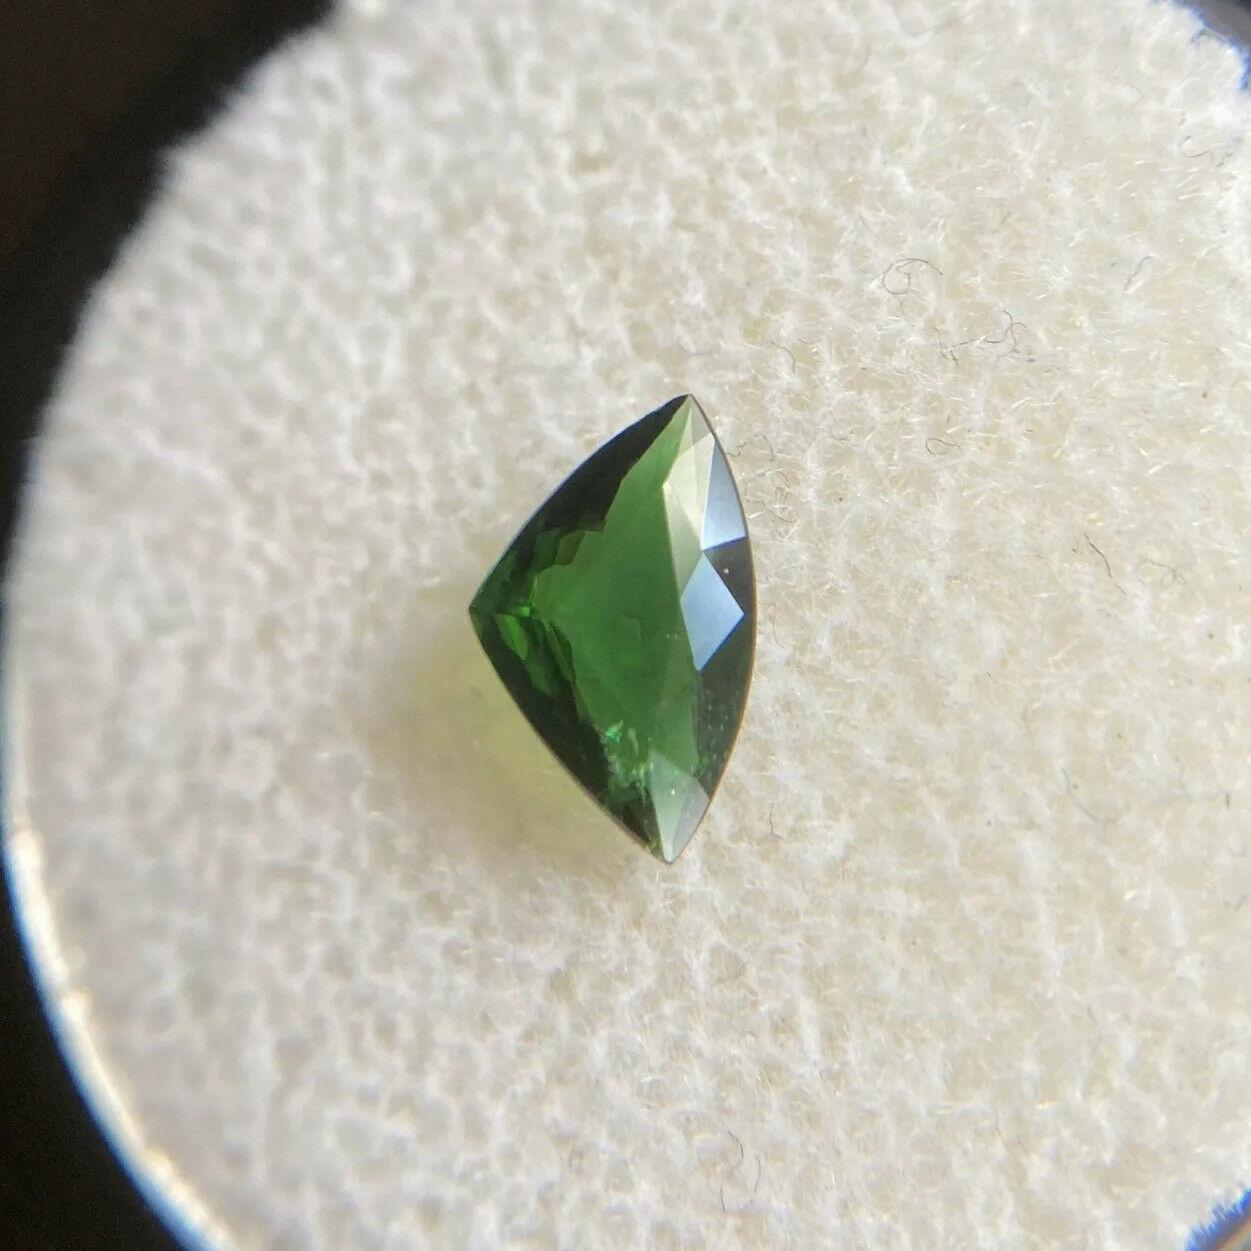 Natürlicher tiefgrüner Chromturmalin 0,49ct Trillion Dreiecksschliff Seltener Edelstein

Natürlicher Chromturmalin mit einer schönen tiefgrünen Farbe. 
Die Farbe dieses Steins ist atemberaubend, ein tiefes Grün. Er hat auch einen sehr guten